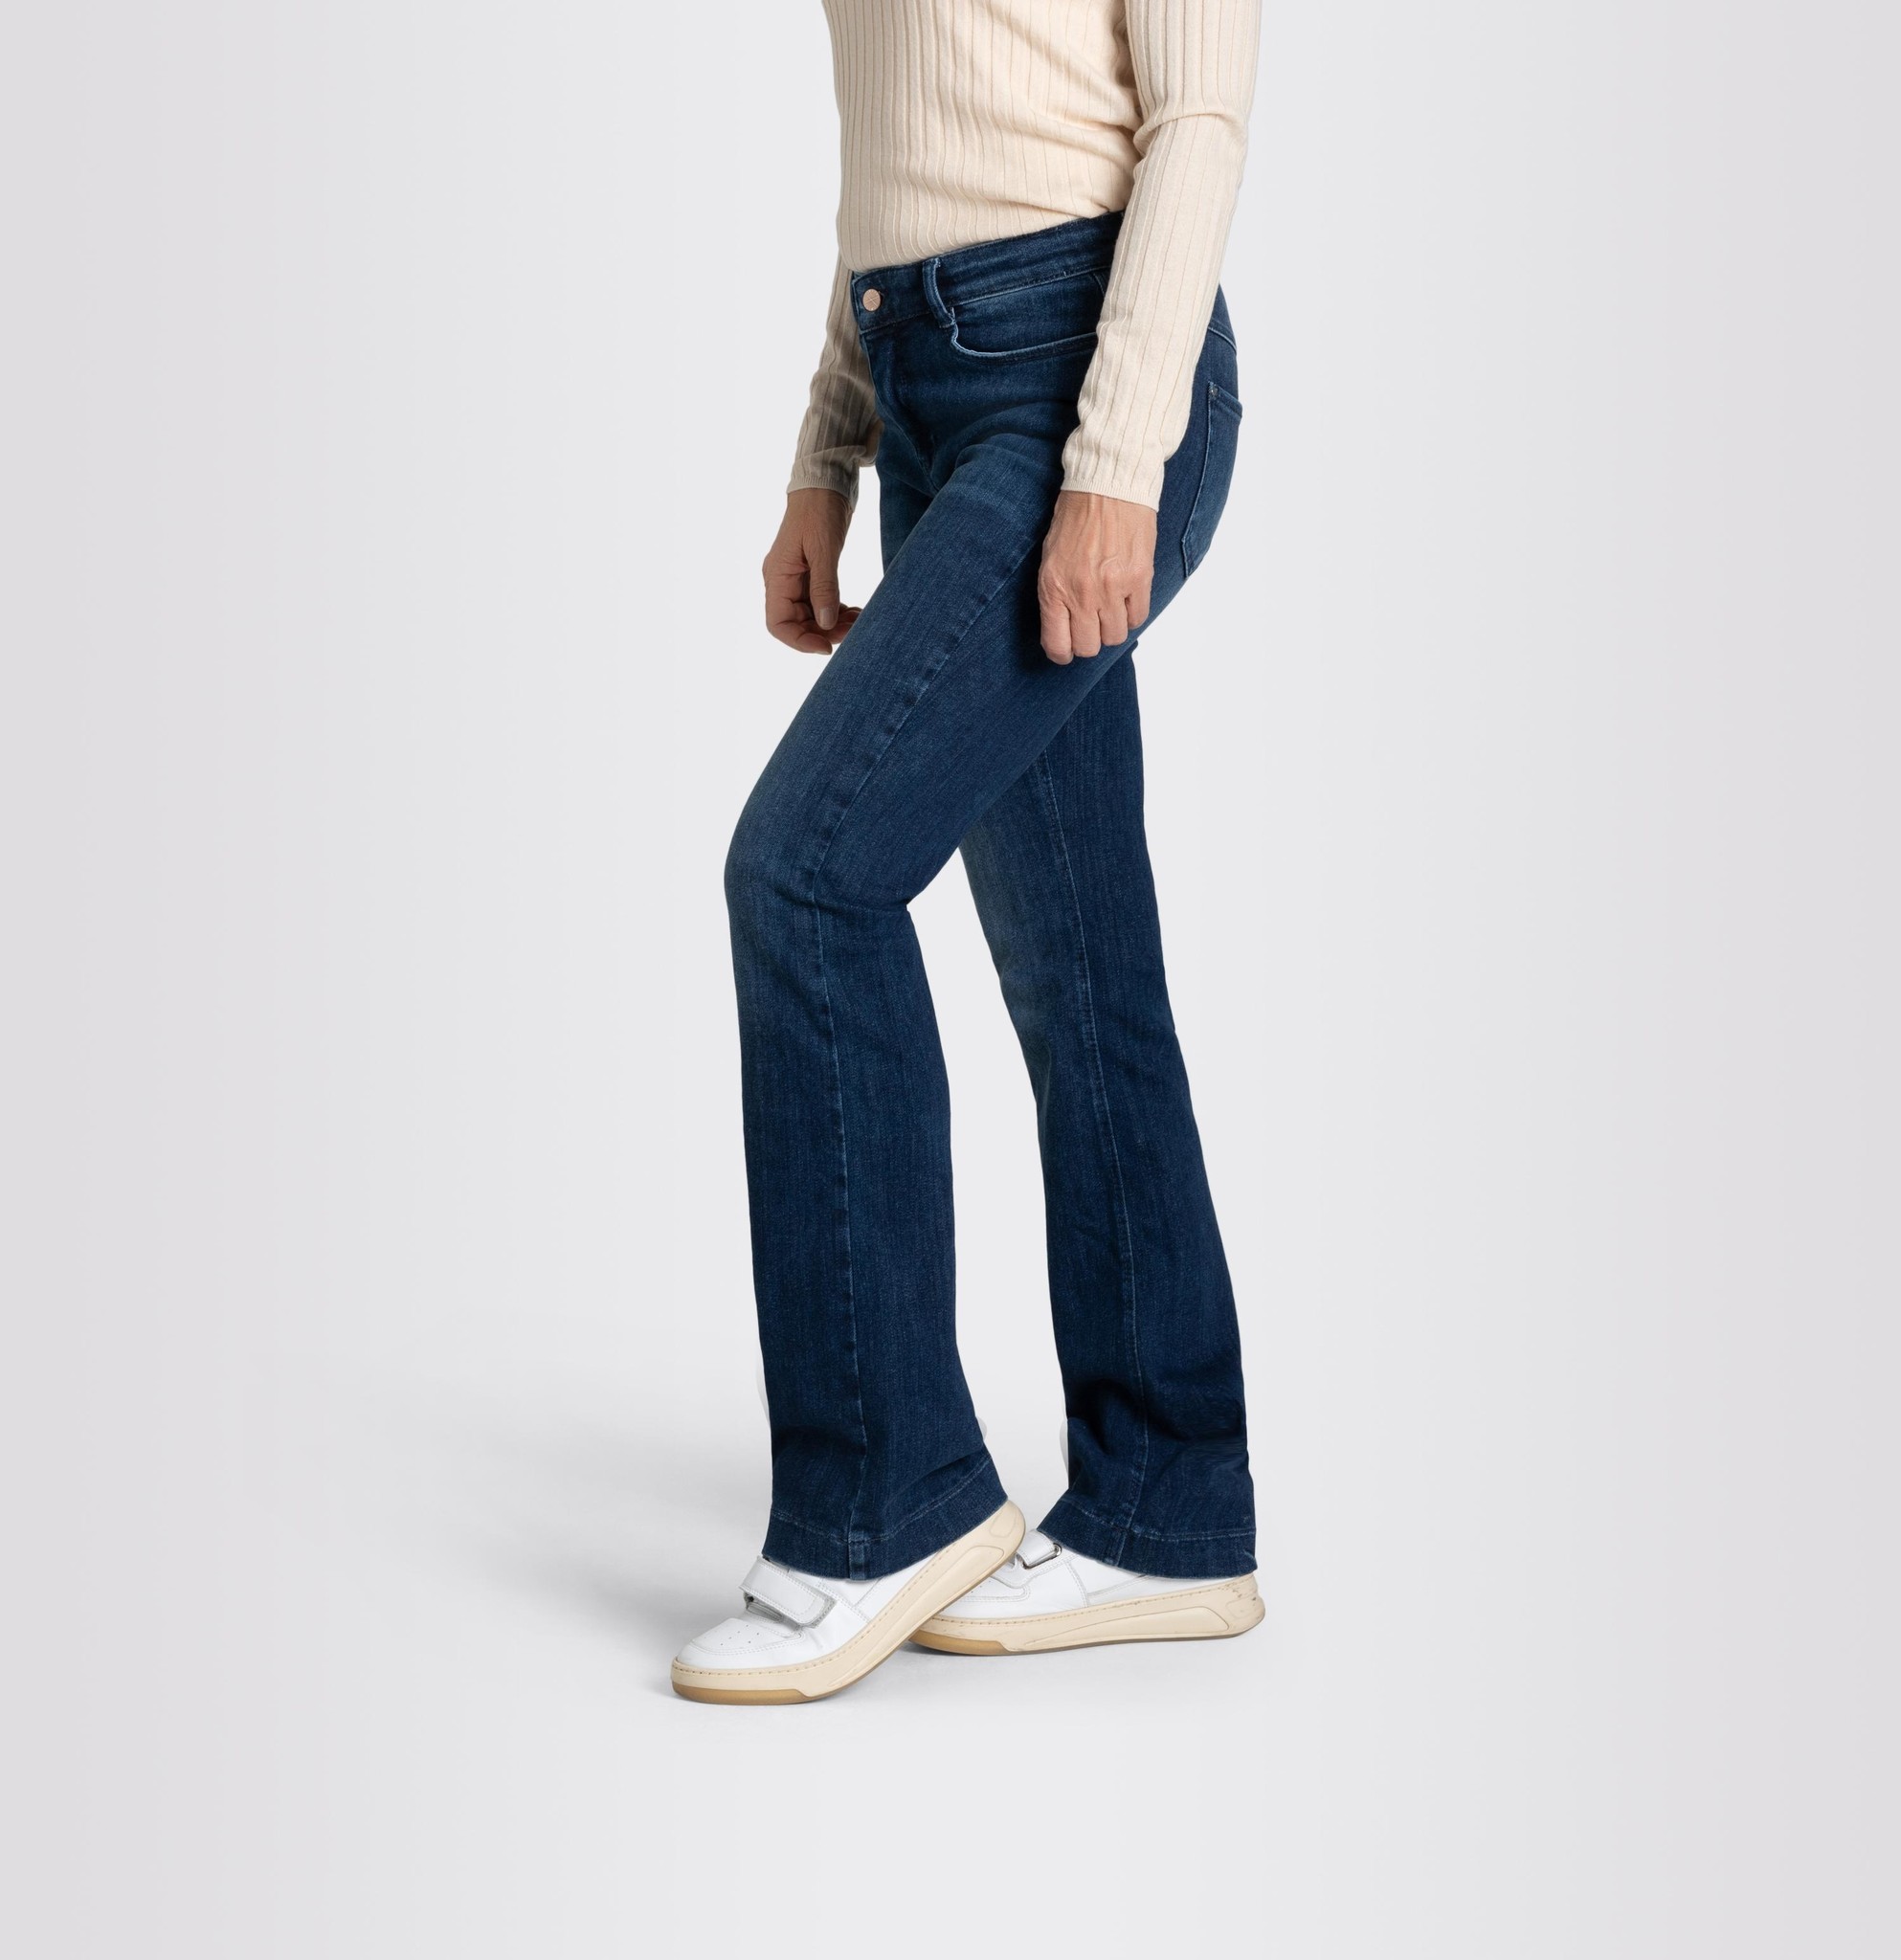 Mac Jeans Cotton Boot | Jeans Dream Authentic Blues - - Cobalt Wash